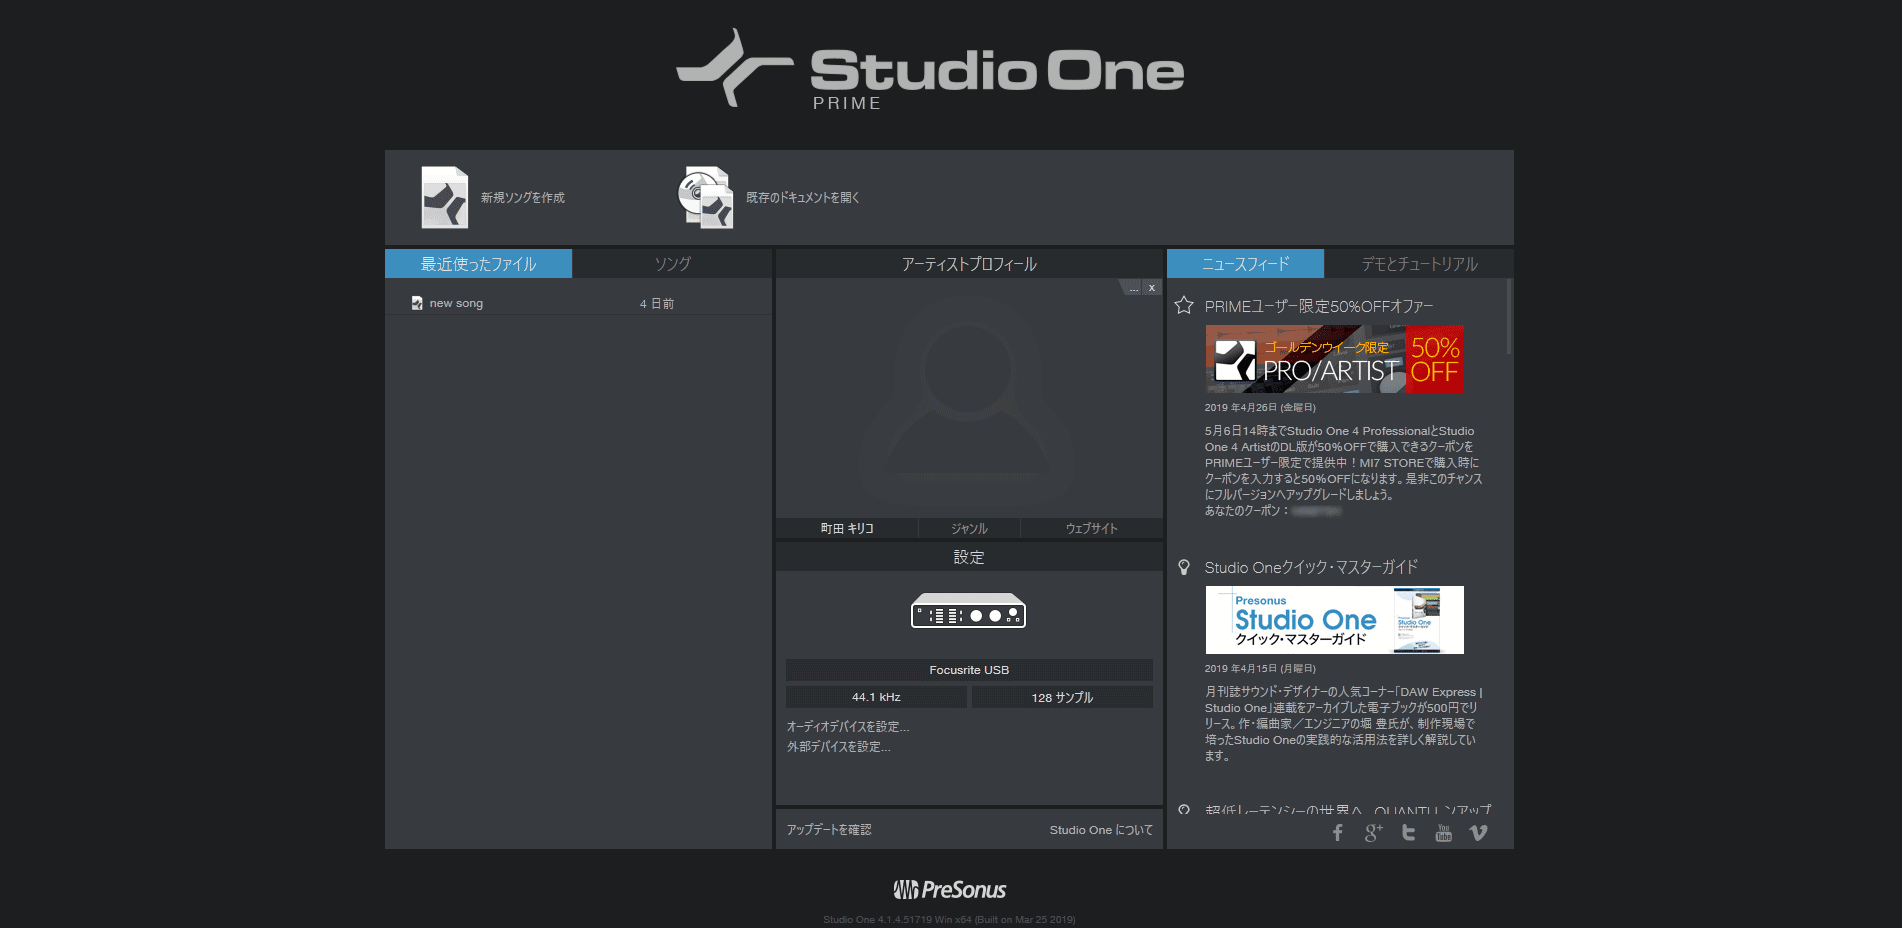 Studio One スタート画面